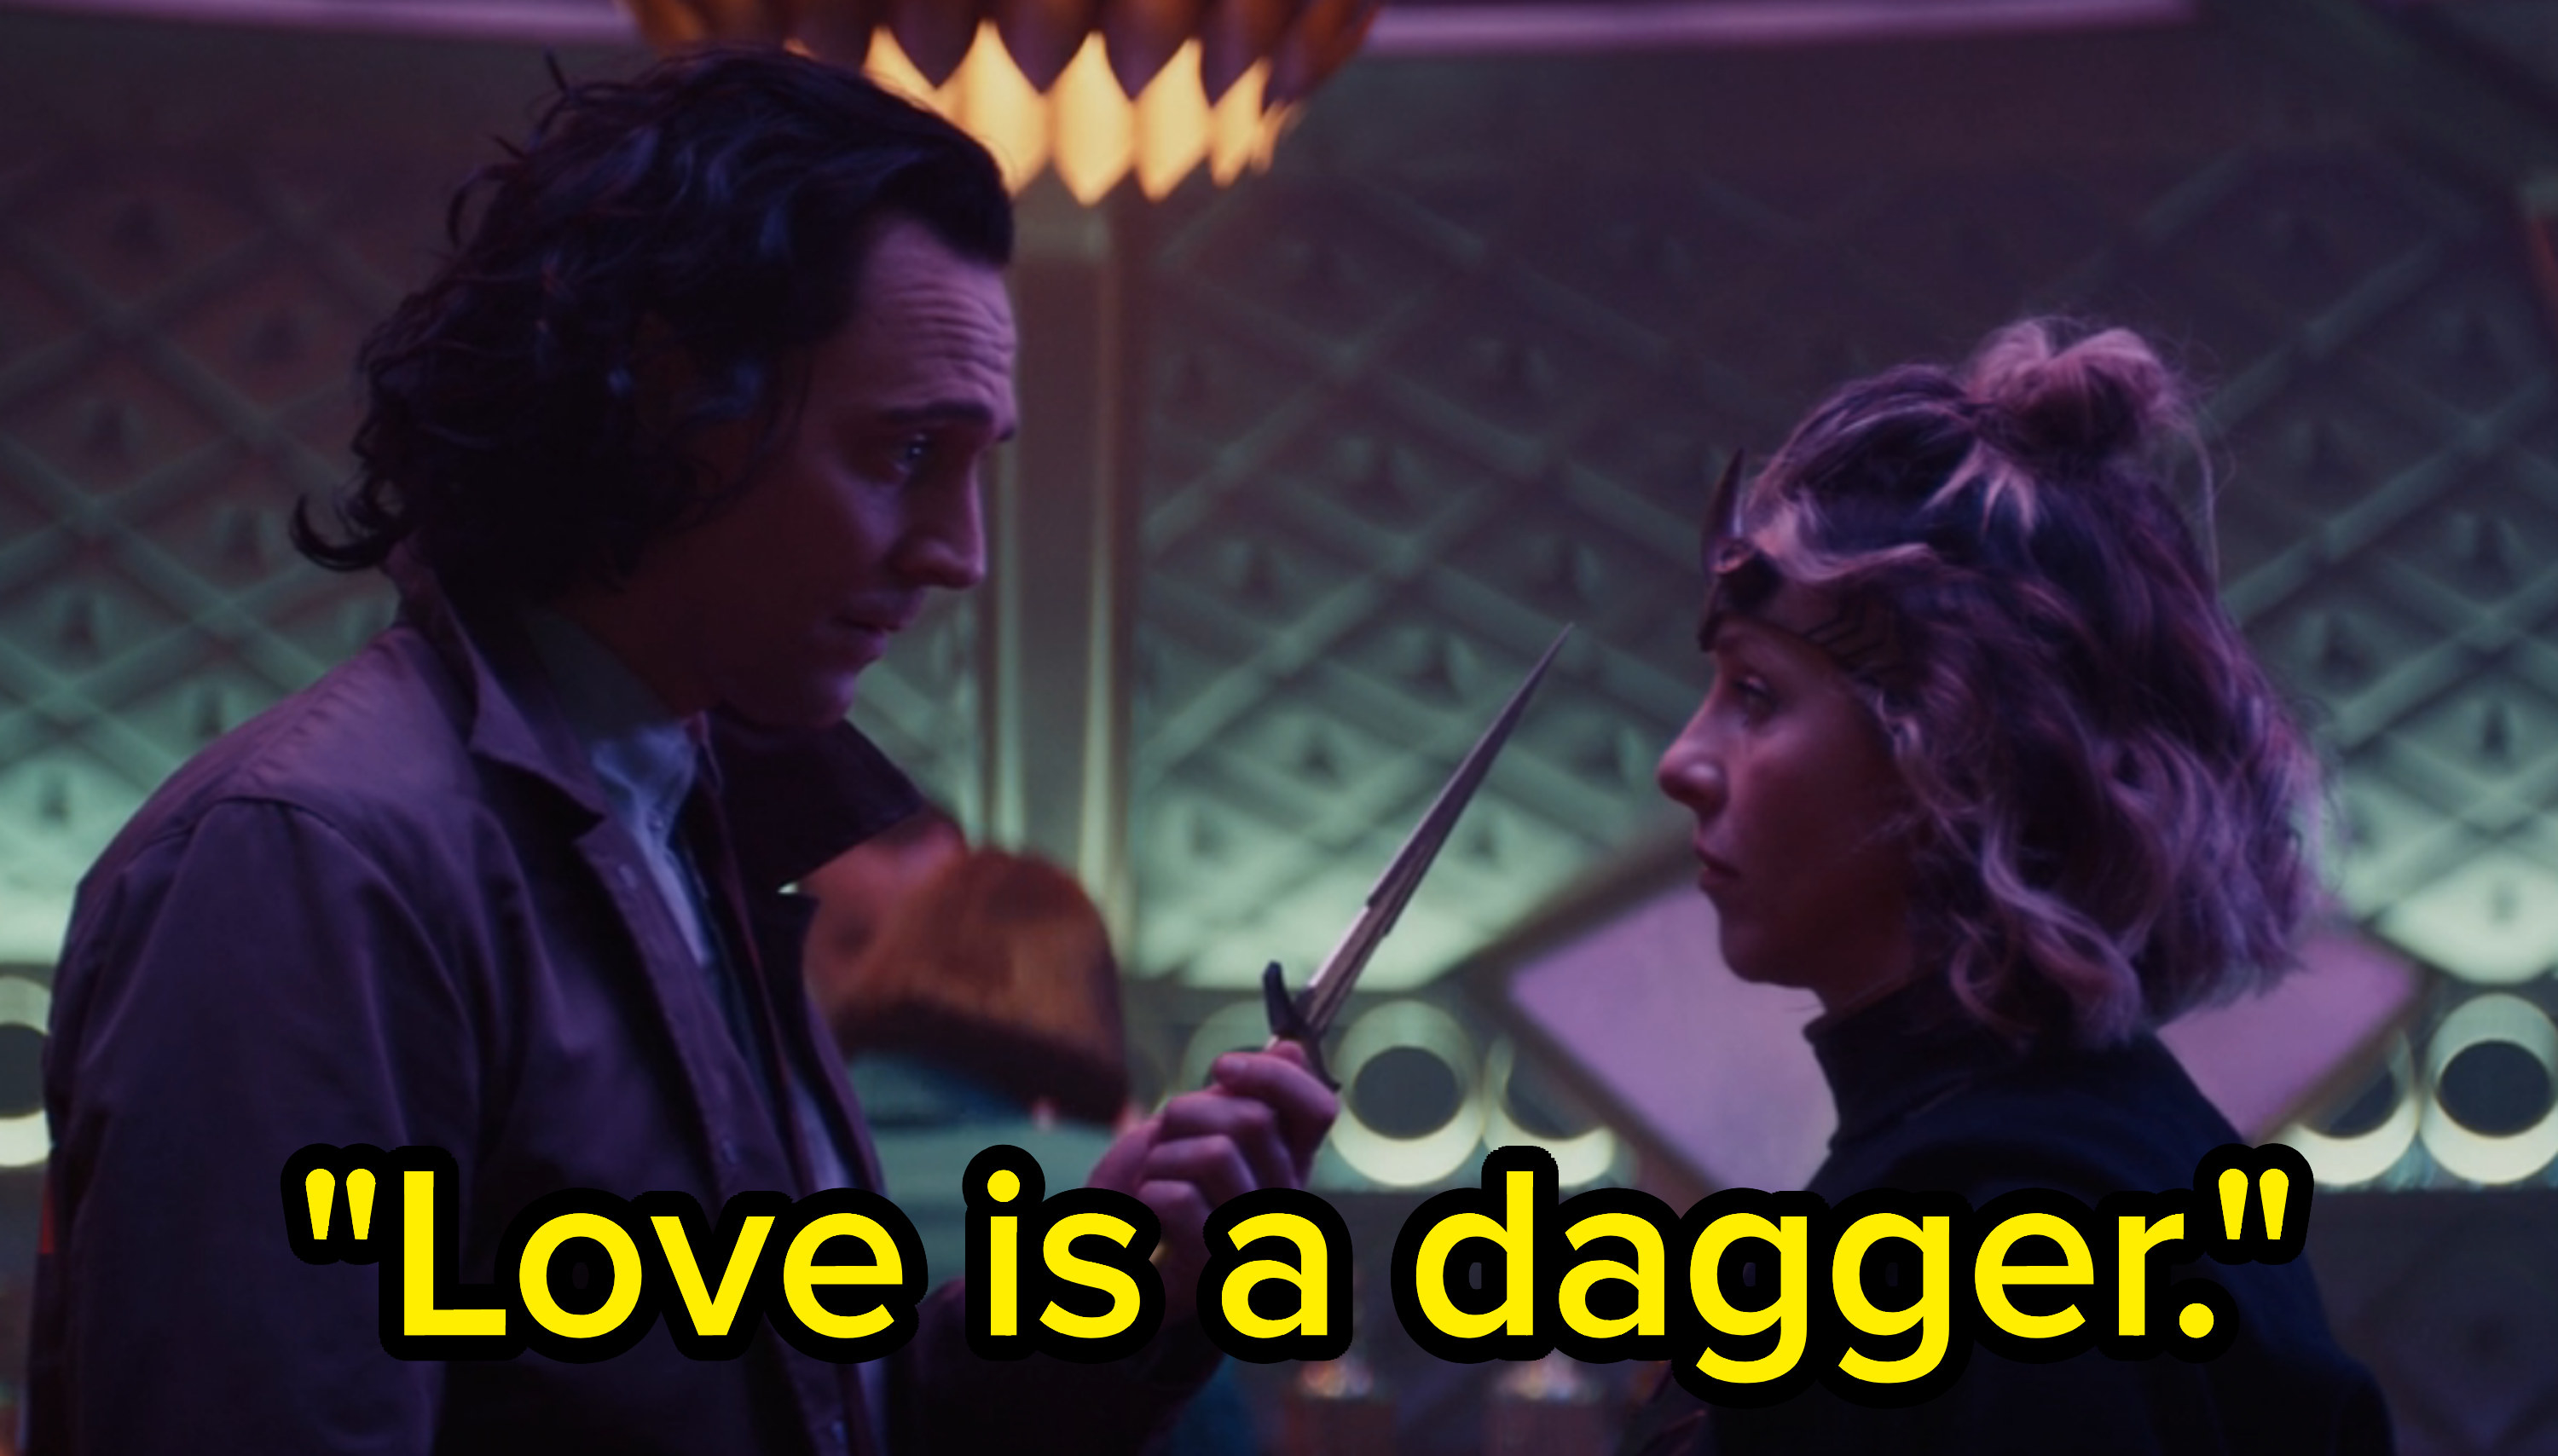 Loki holds out a dagger towards Sylvie